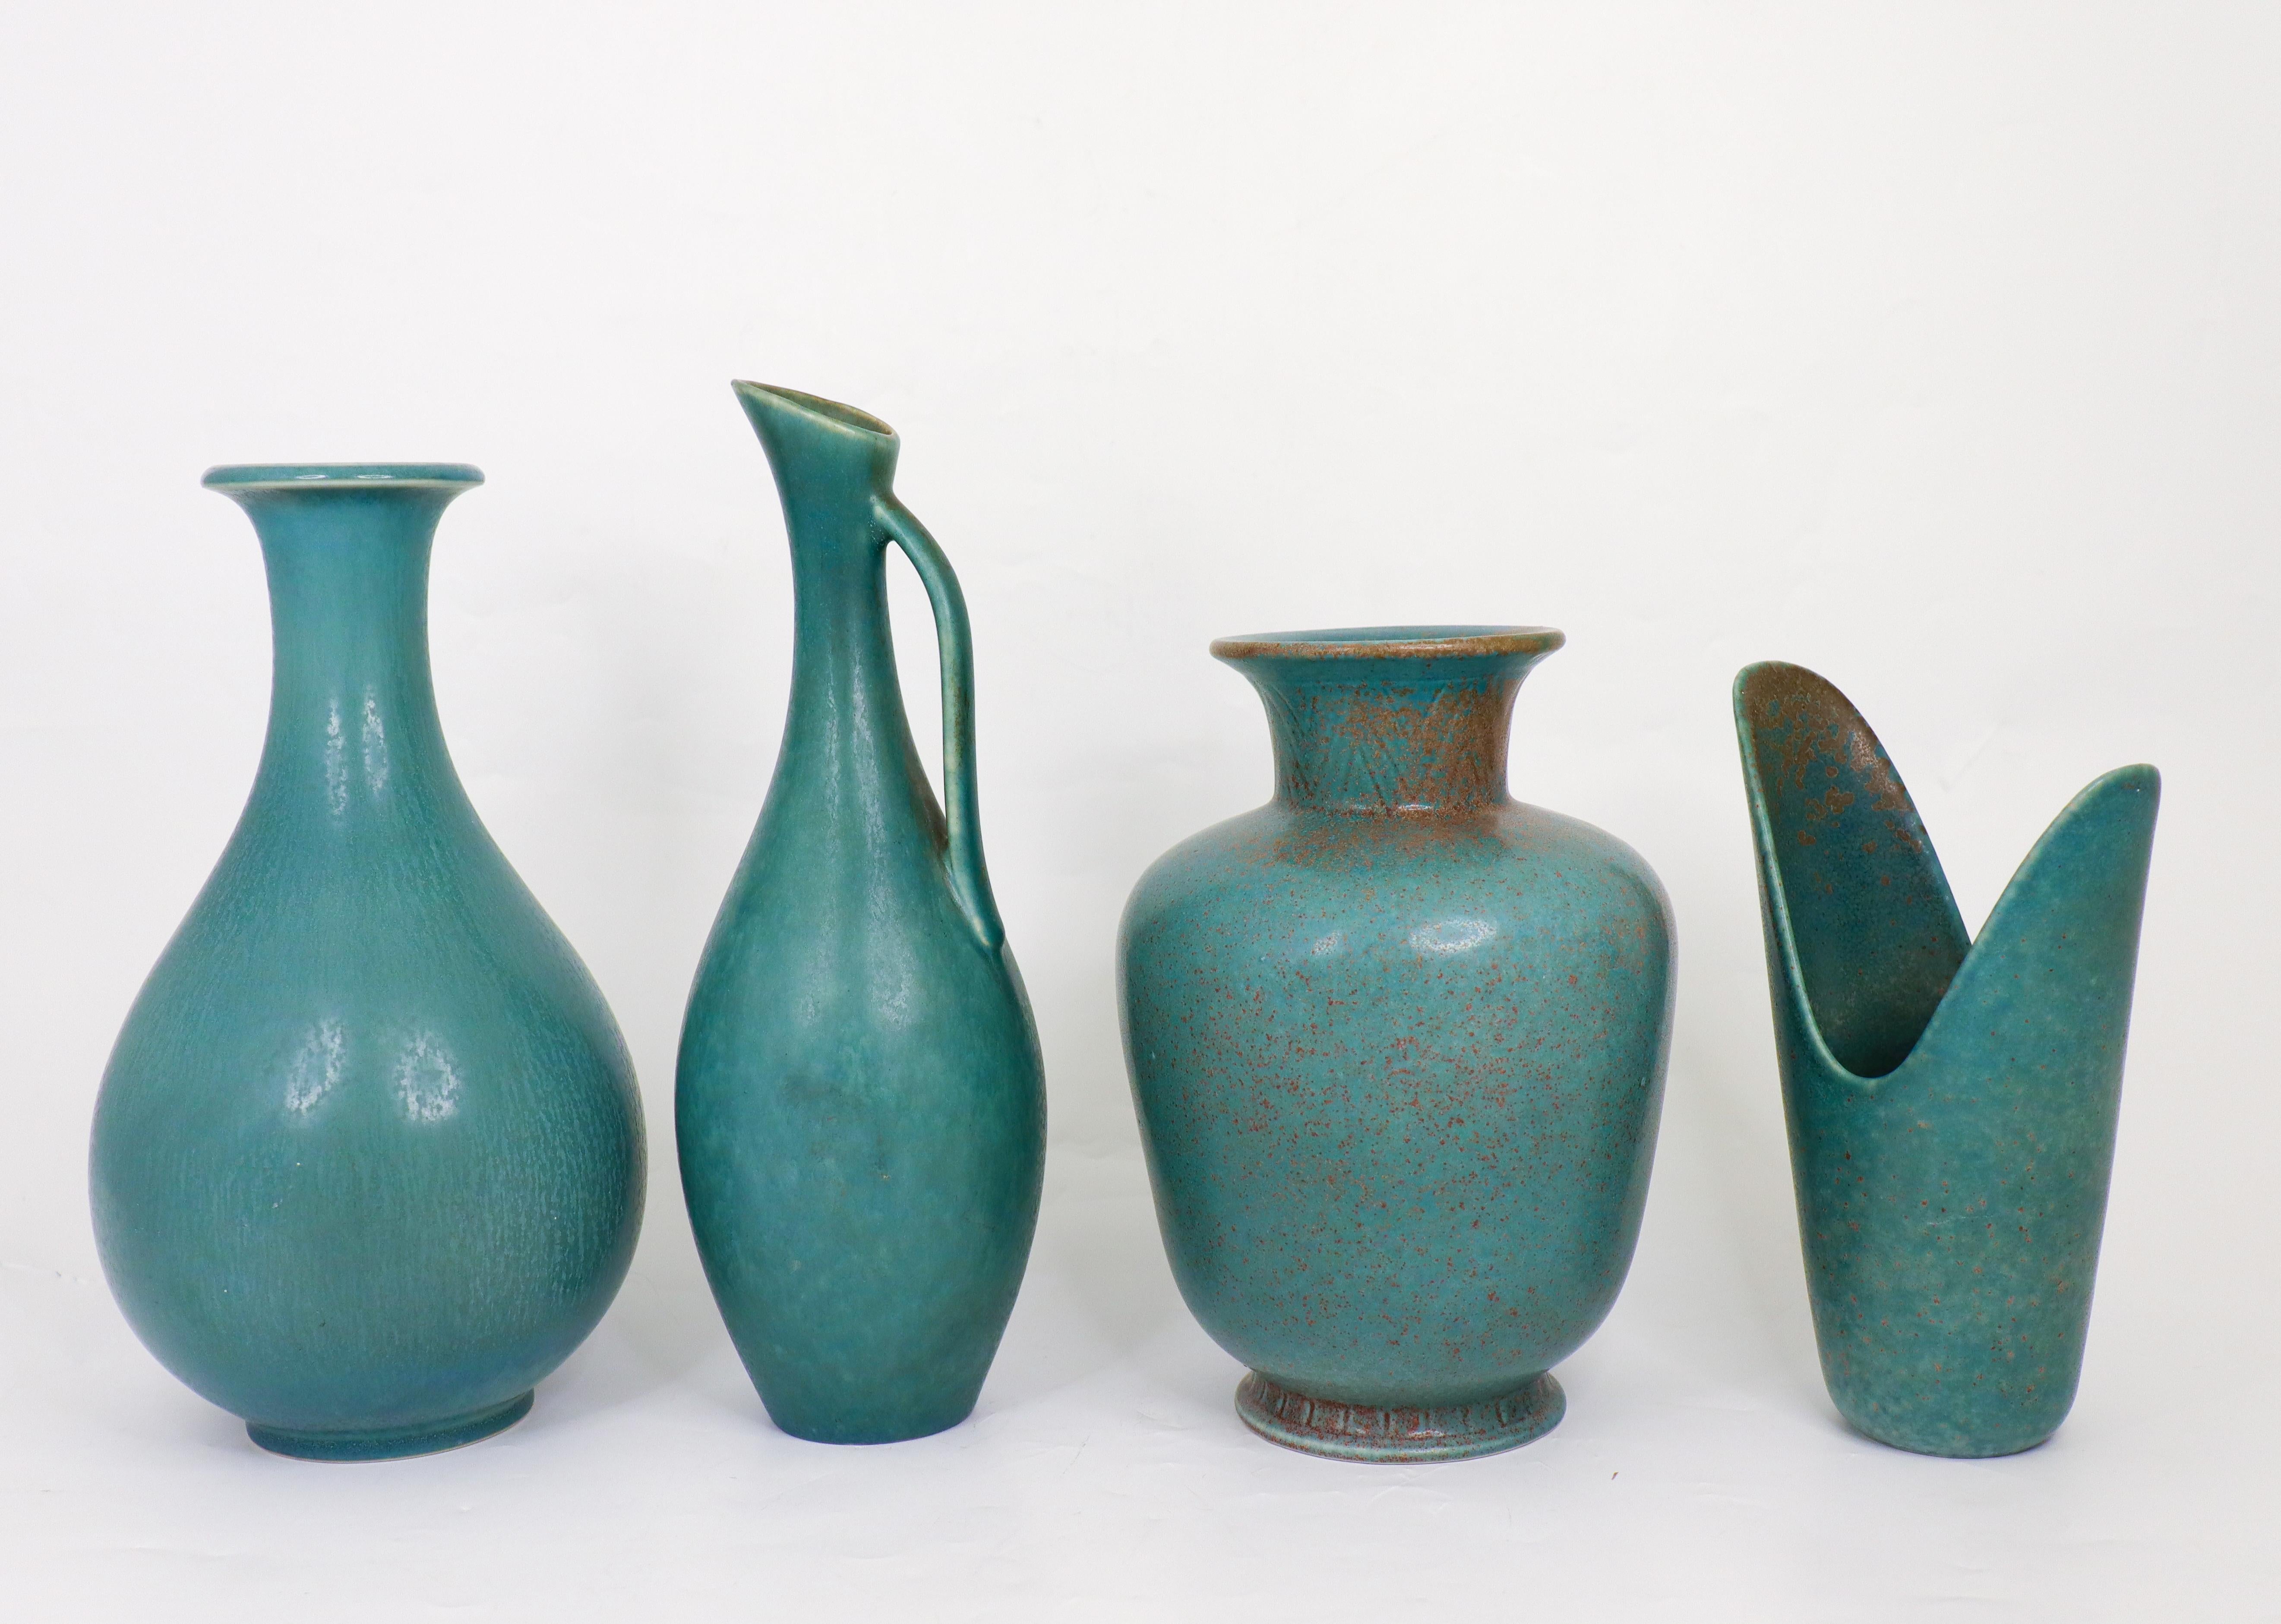 Un groupe de quatre vases avec une glaçure étonnante conçue par Gunnar Nylund à Rörstrand dans les années 1950. Les vases mesurent entre 18,5 et 26 cm de haut et sont en excellent état. Ils sont tous marqués comme étant de première qualité.